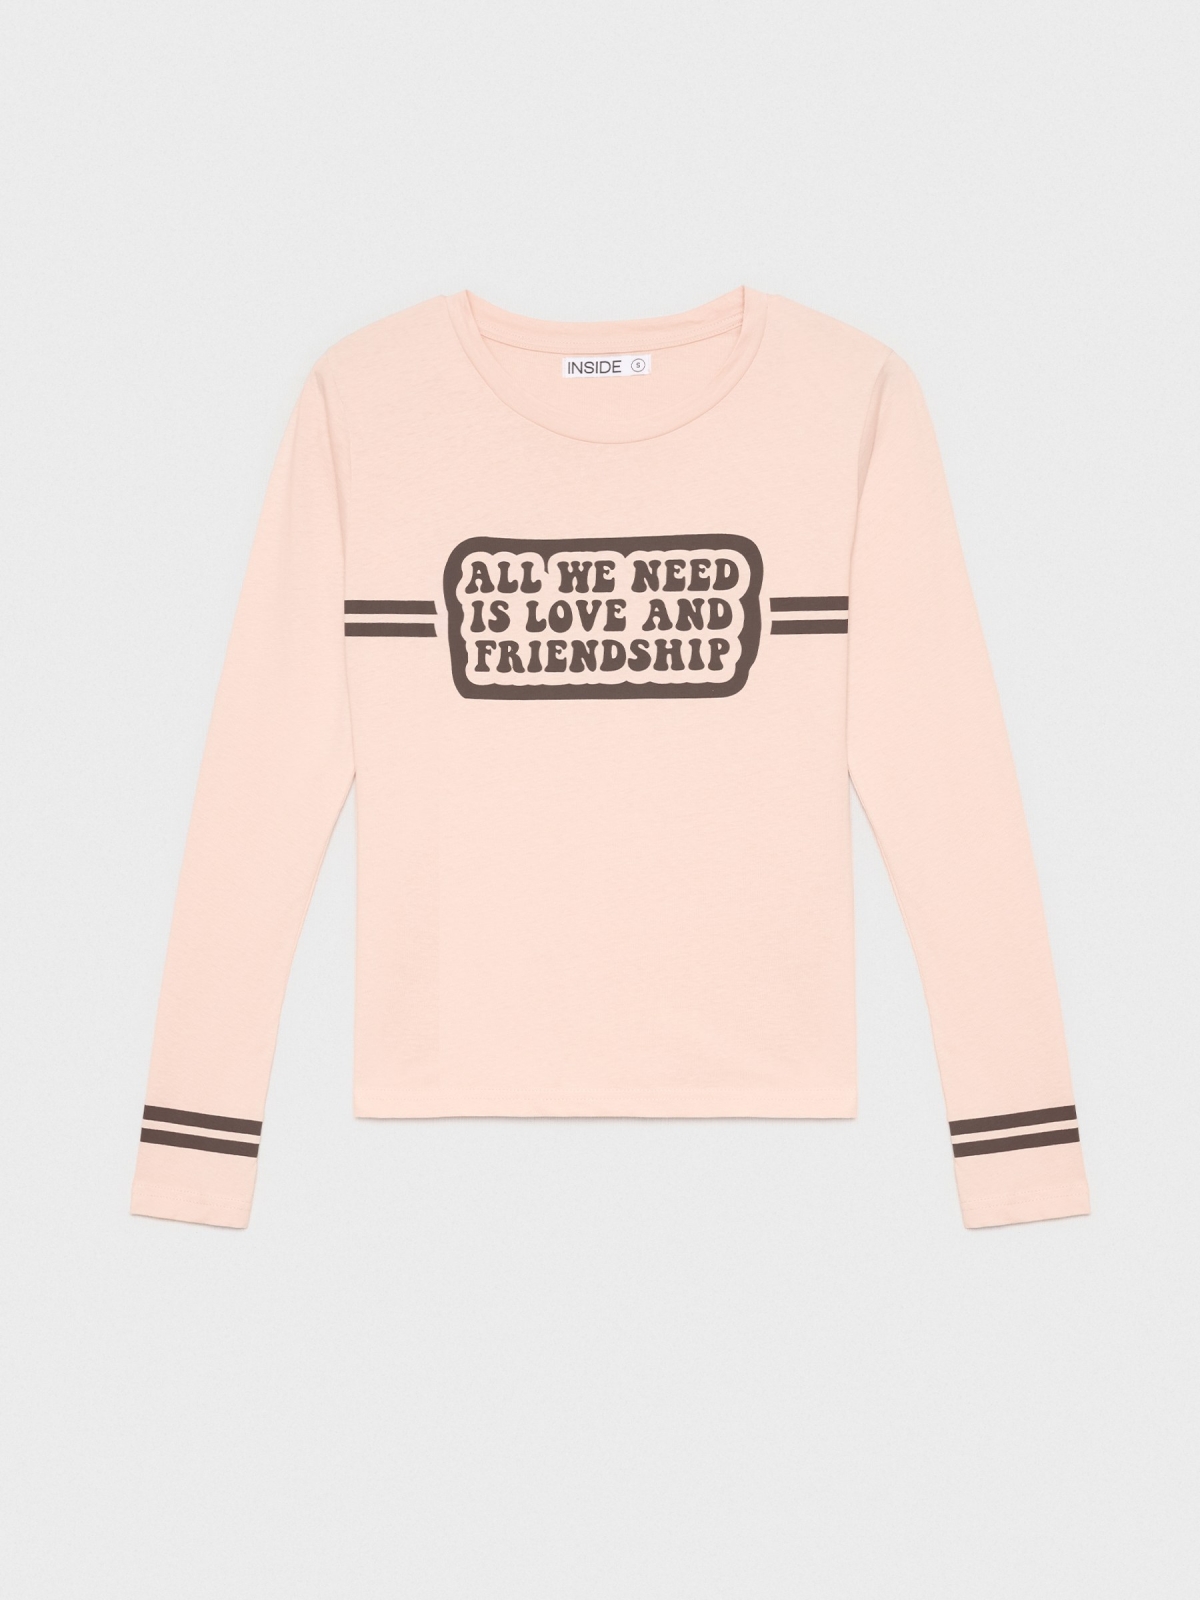  T-shirt manga longa mensagem rosa claro